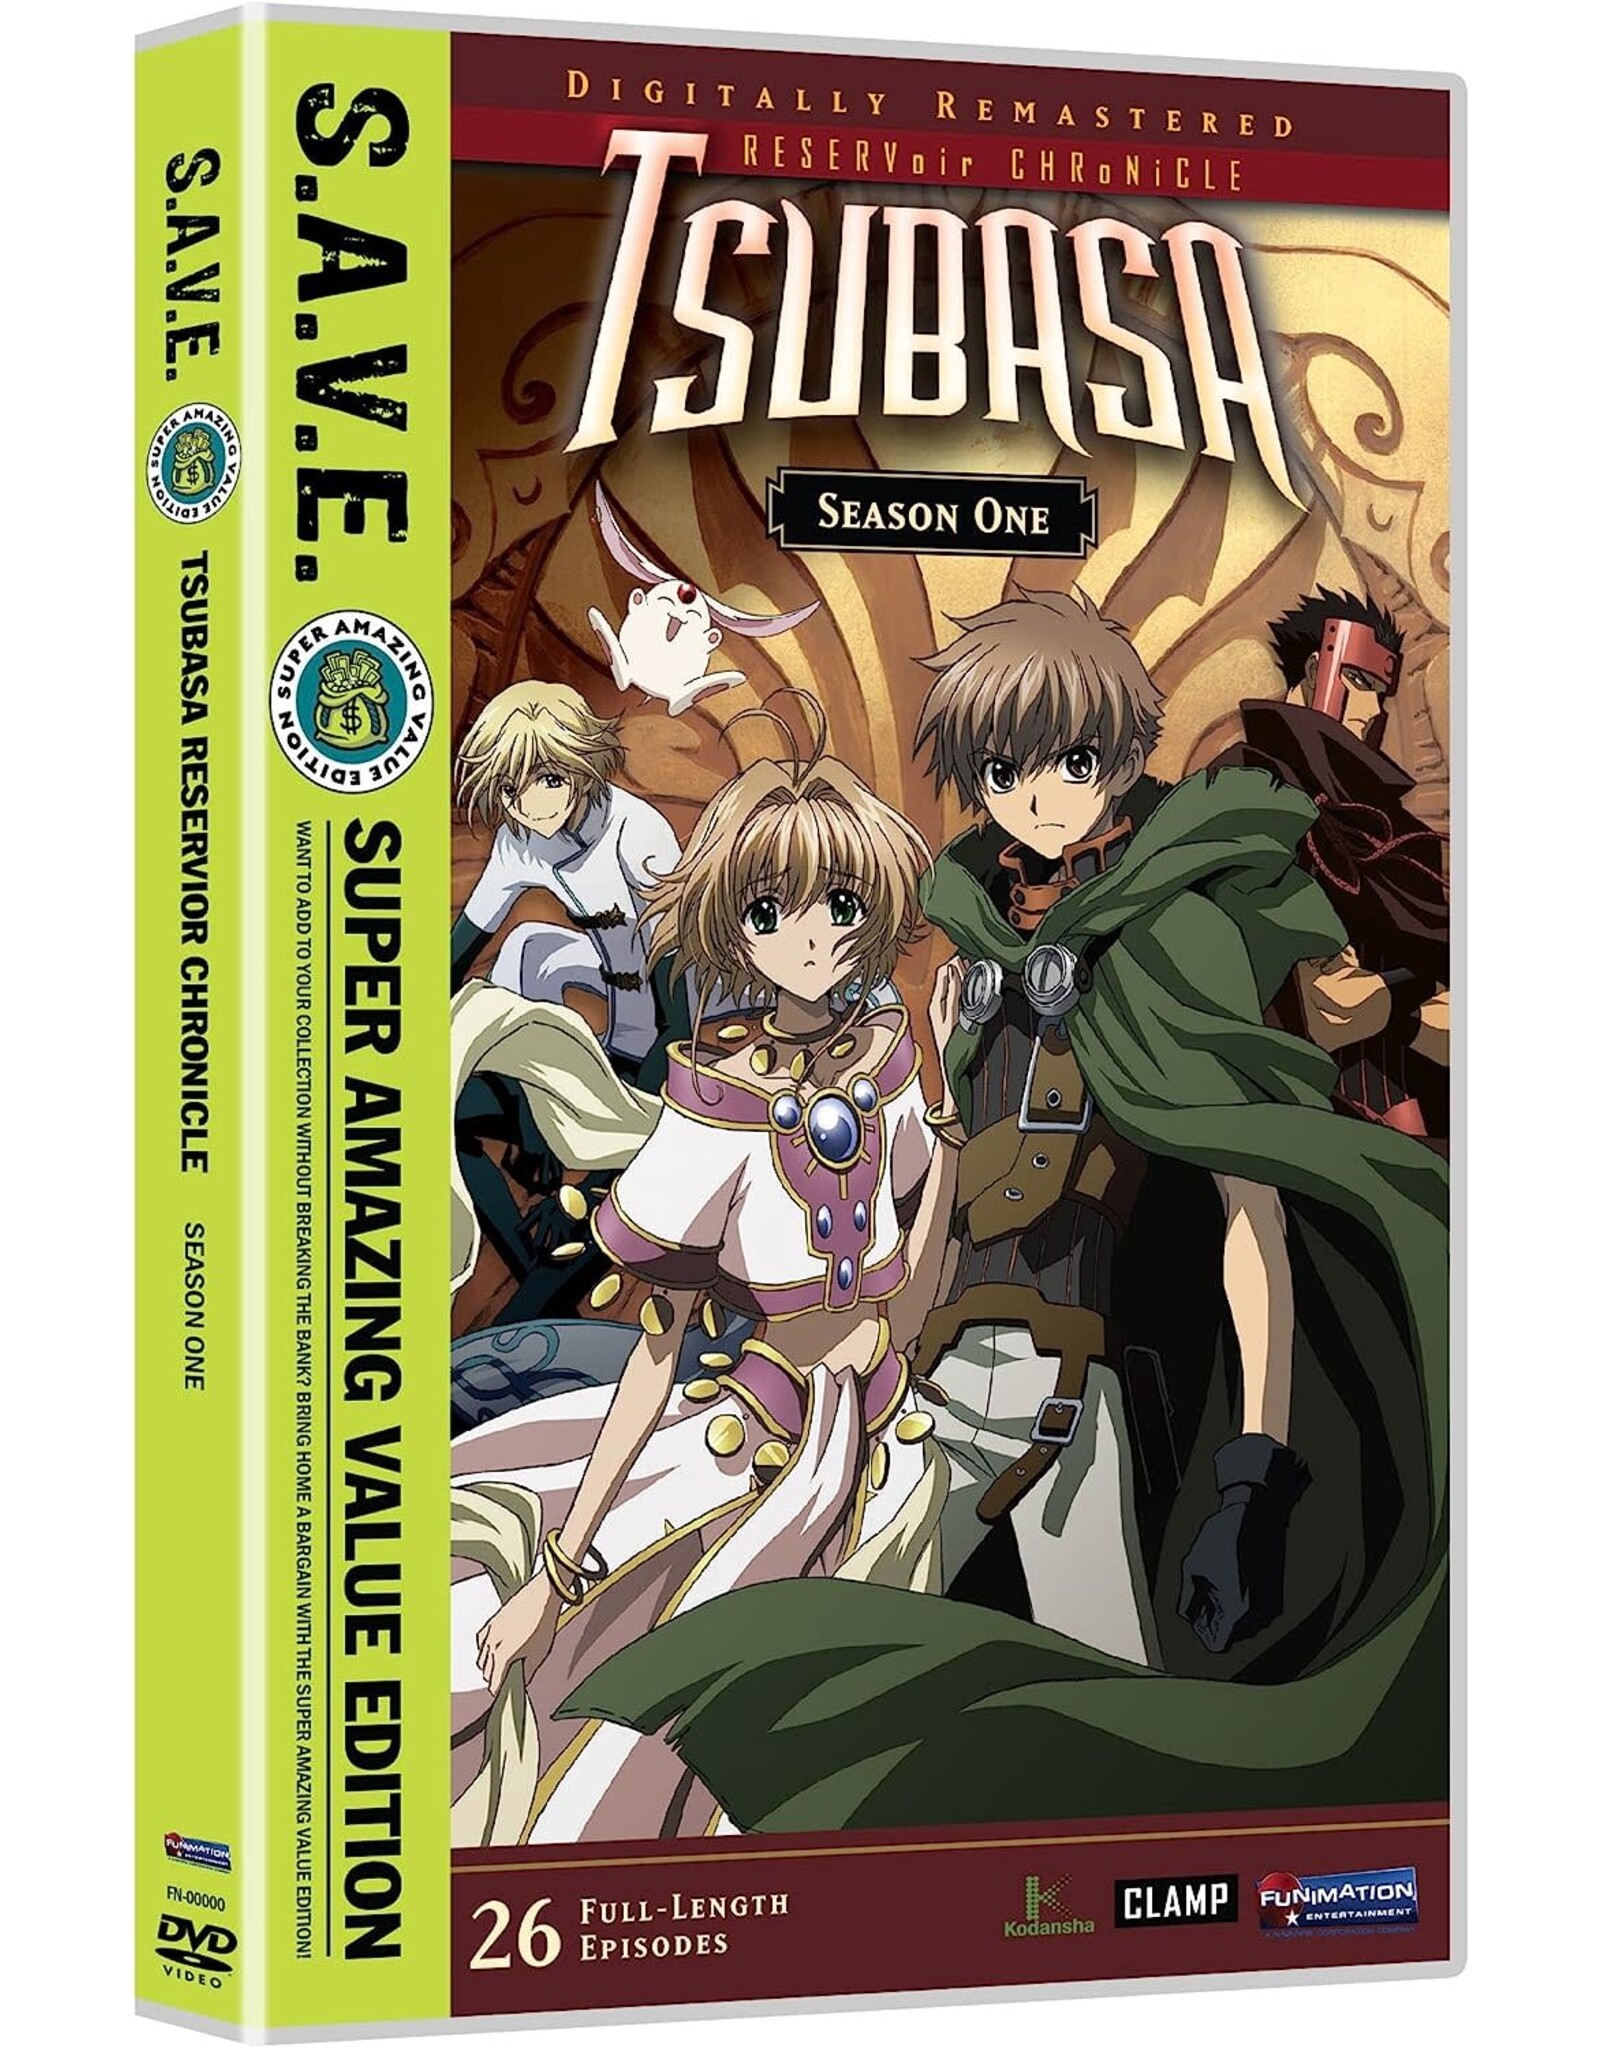 Anime & Animation Tsubasa Season One - S.A.V.E. (Used)